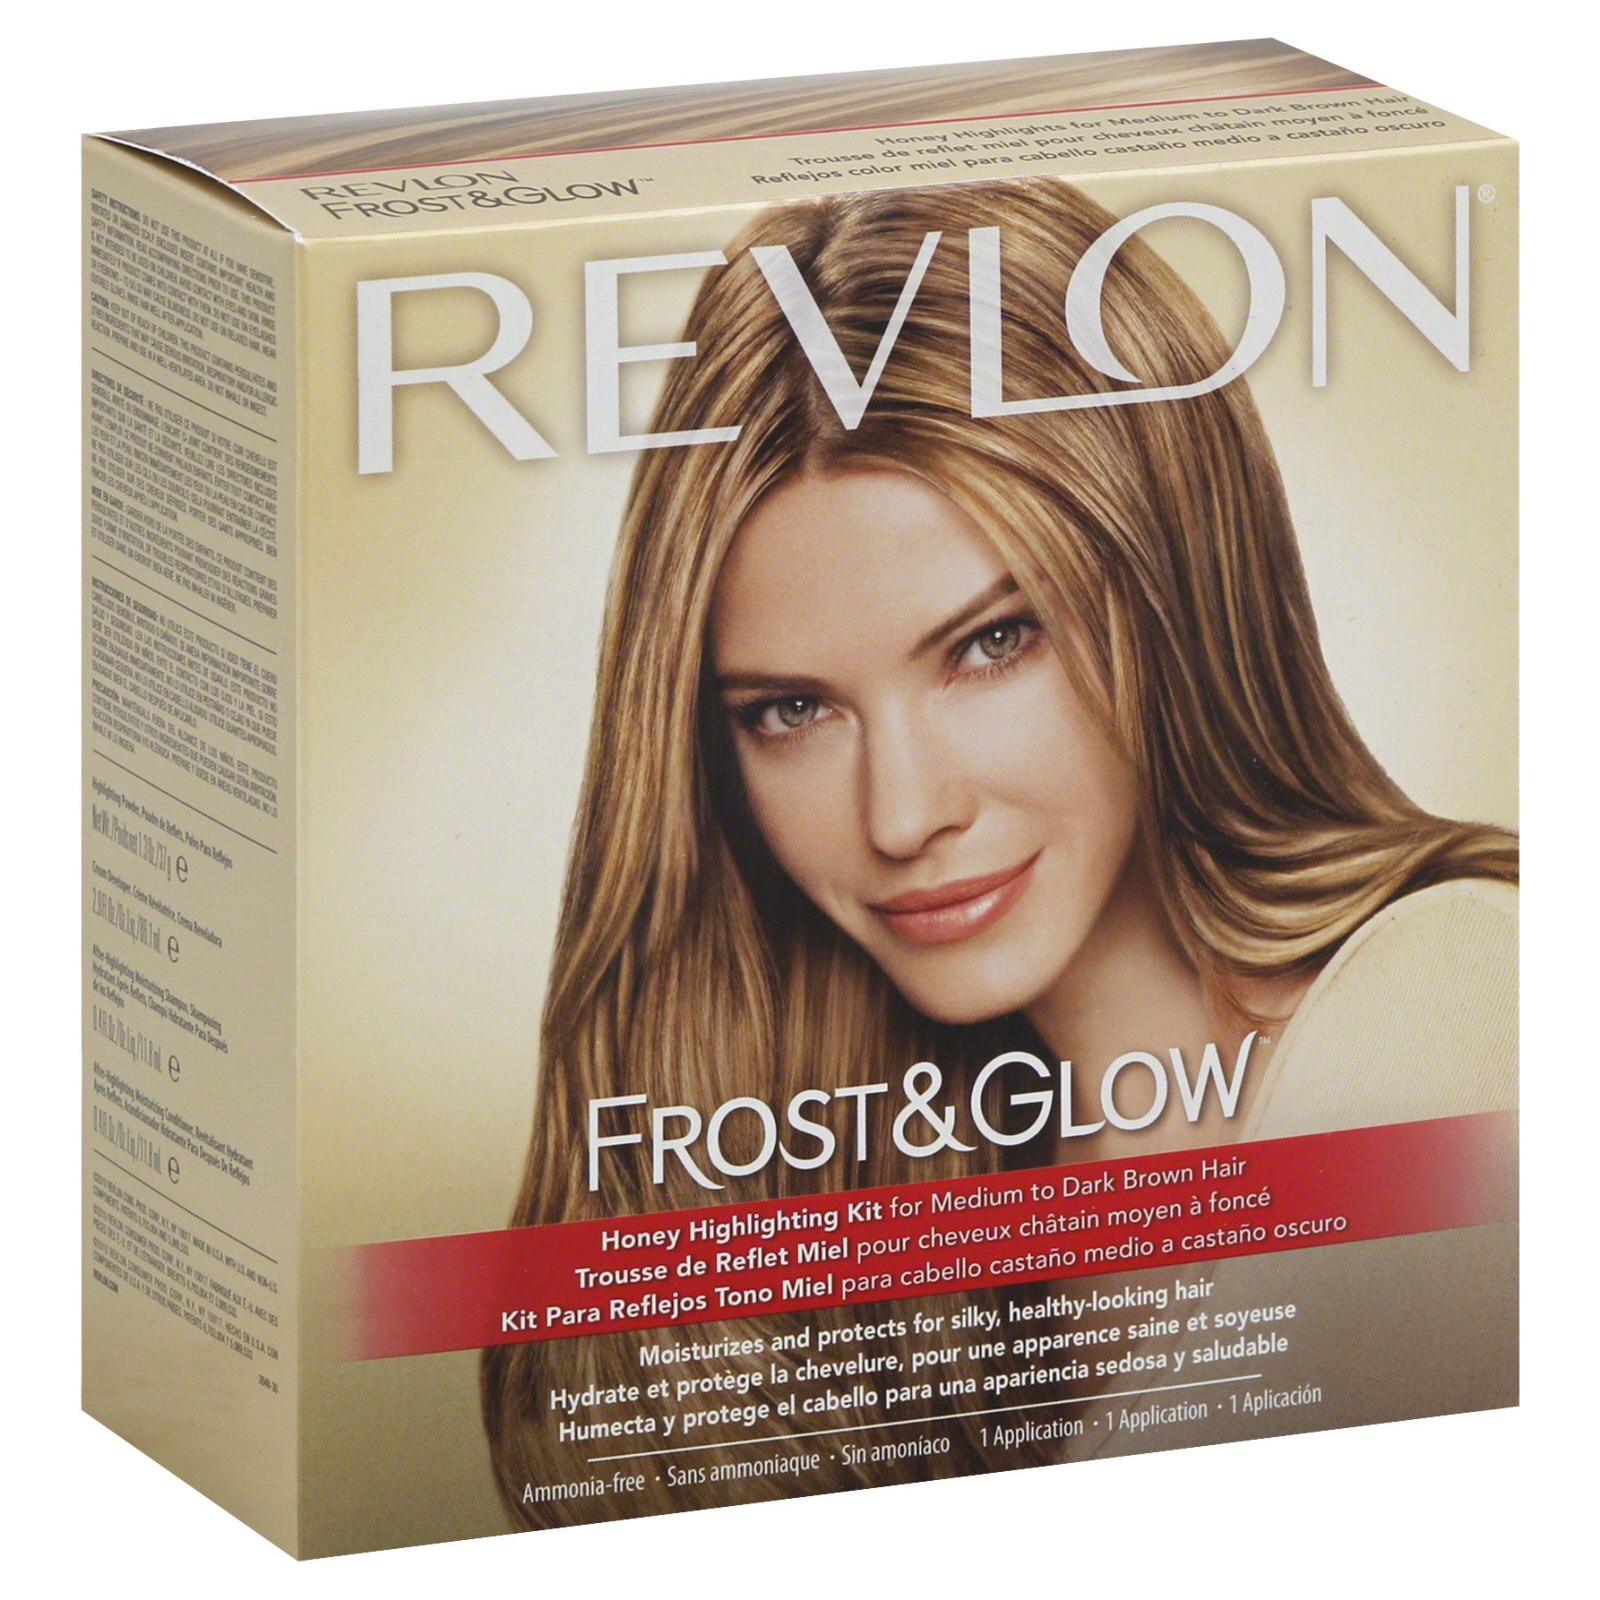 Revlon Frost & Glow Highlighting Kit, Honey, for Medium to.